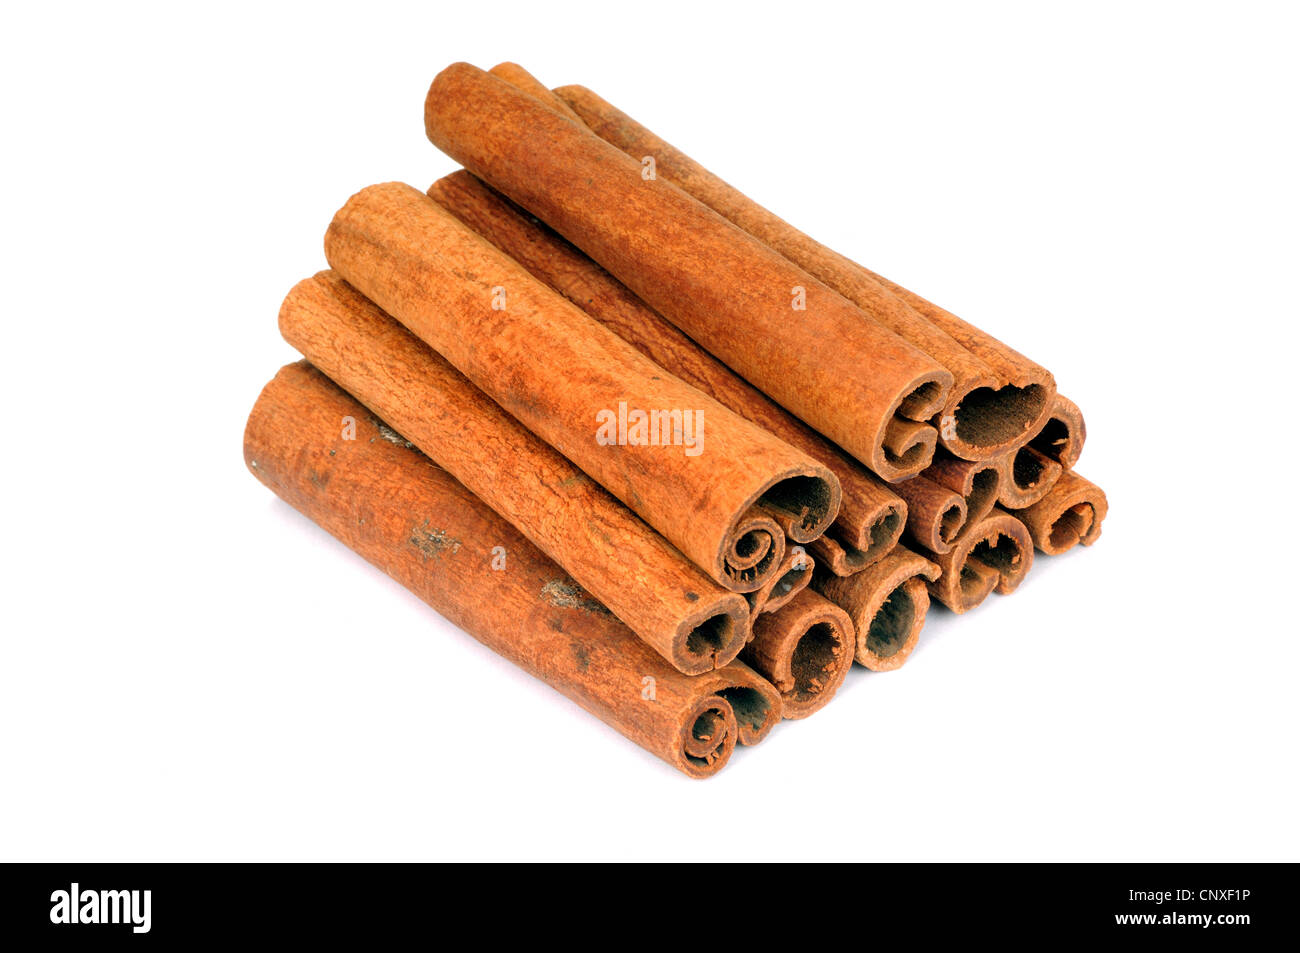 Cannelle (Cinnamomum spec.), bâtons de cannelle Banque D'Images